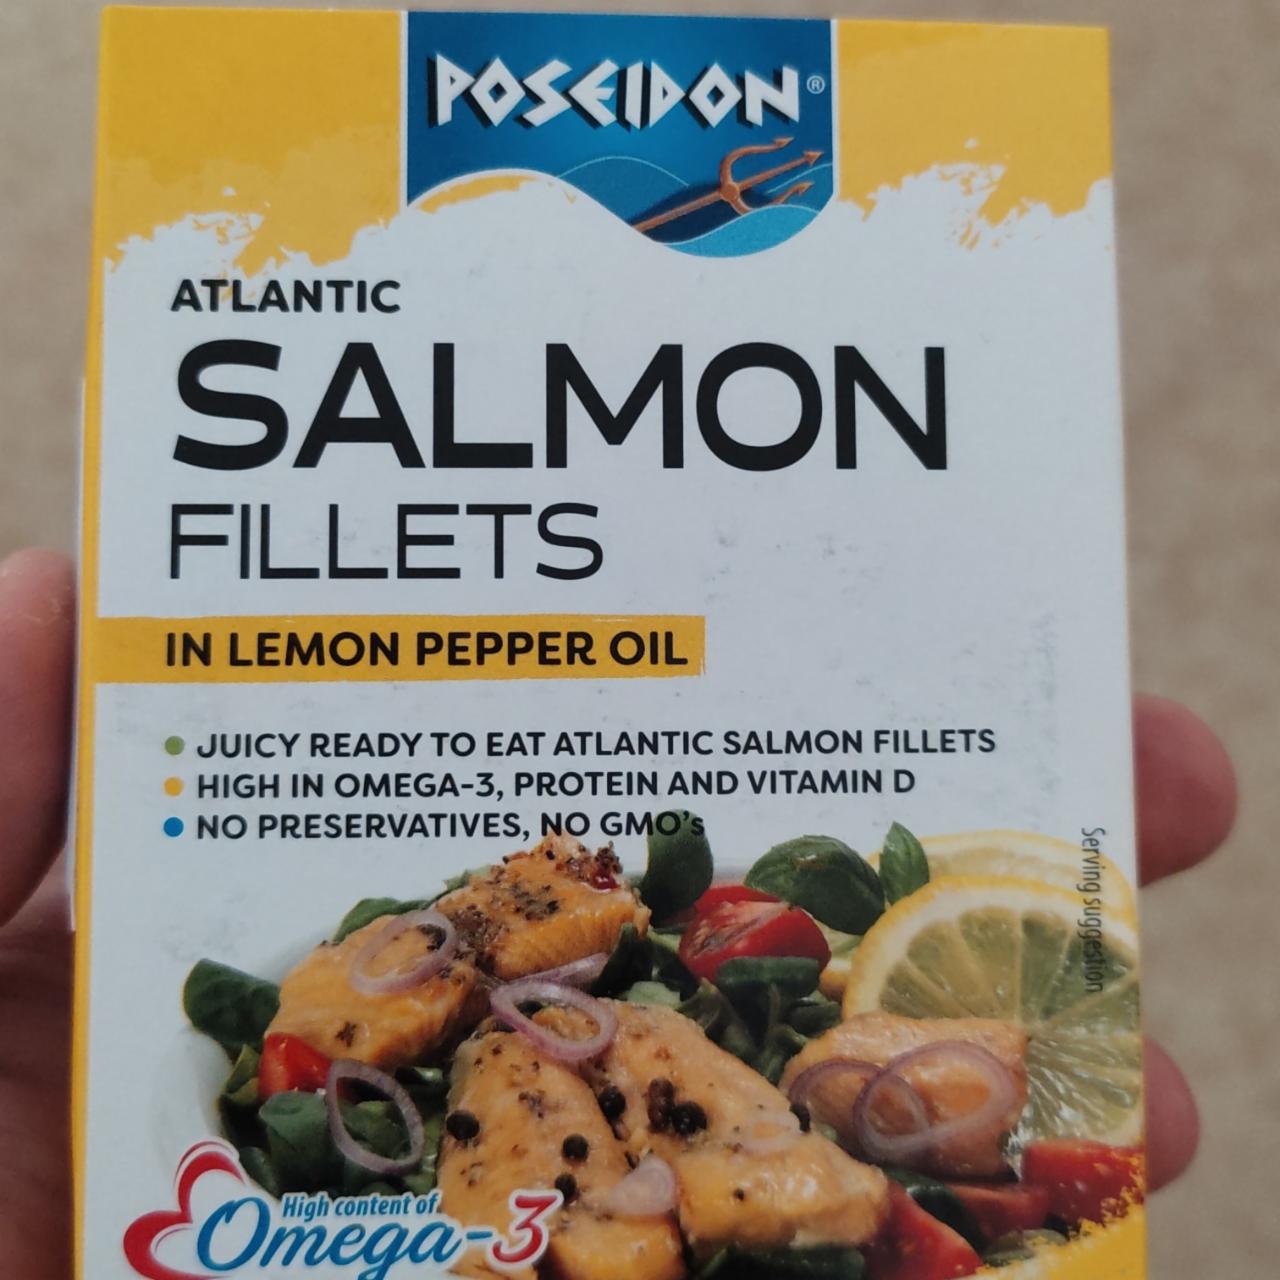 Fotografie - Atlantic Salmon Fillets in lemon pepper oil Poseidon